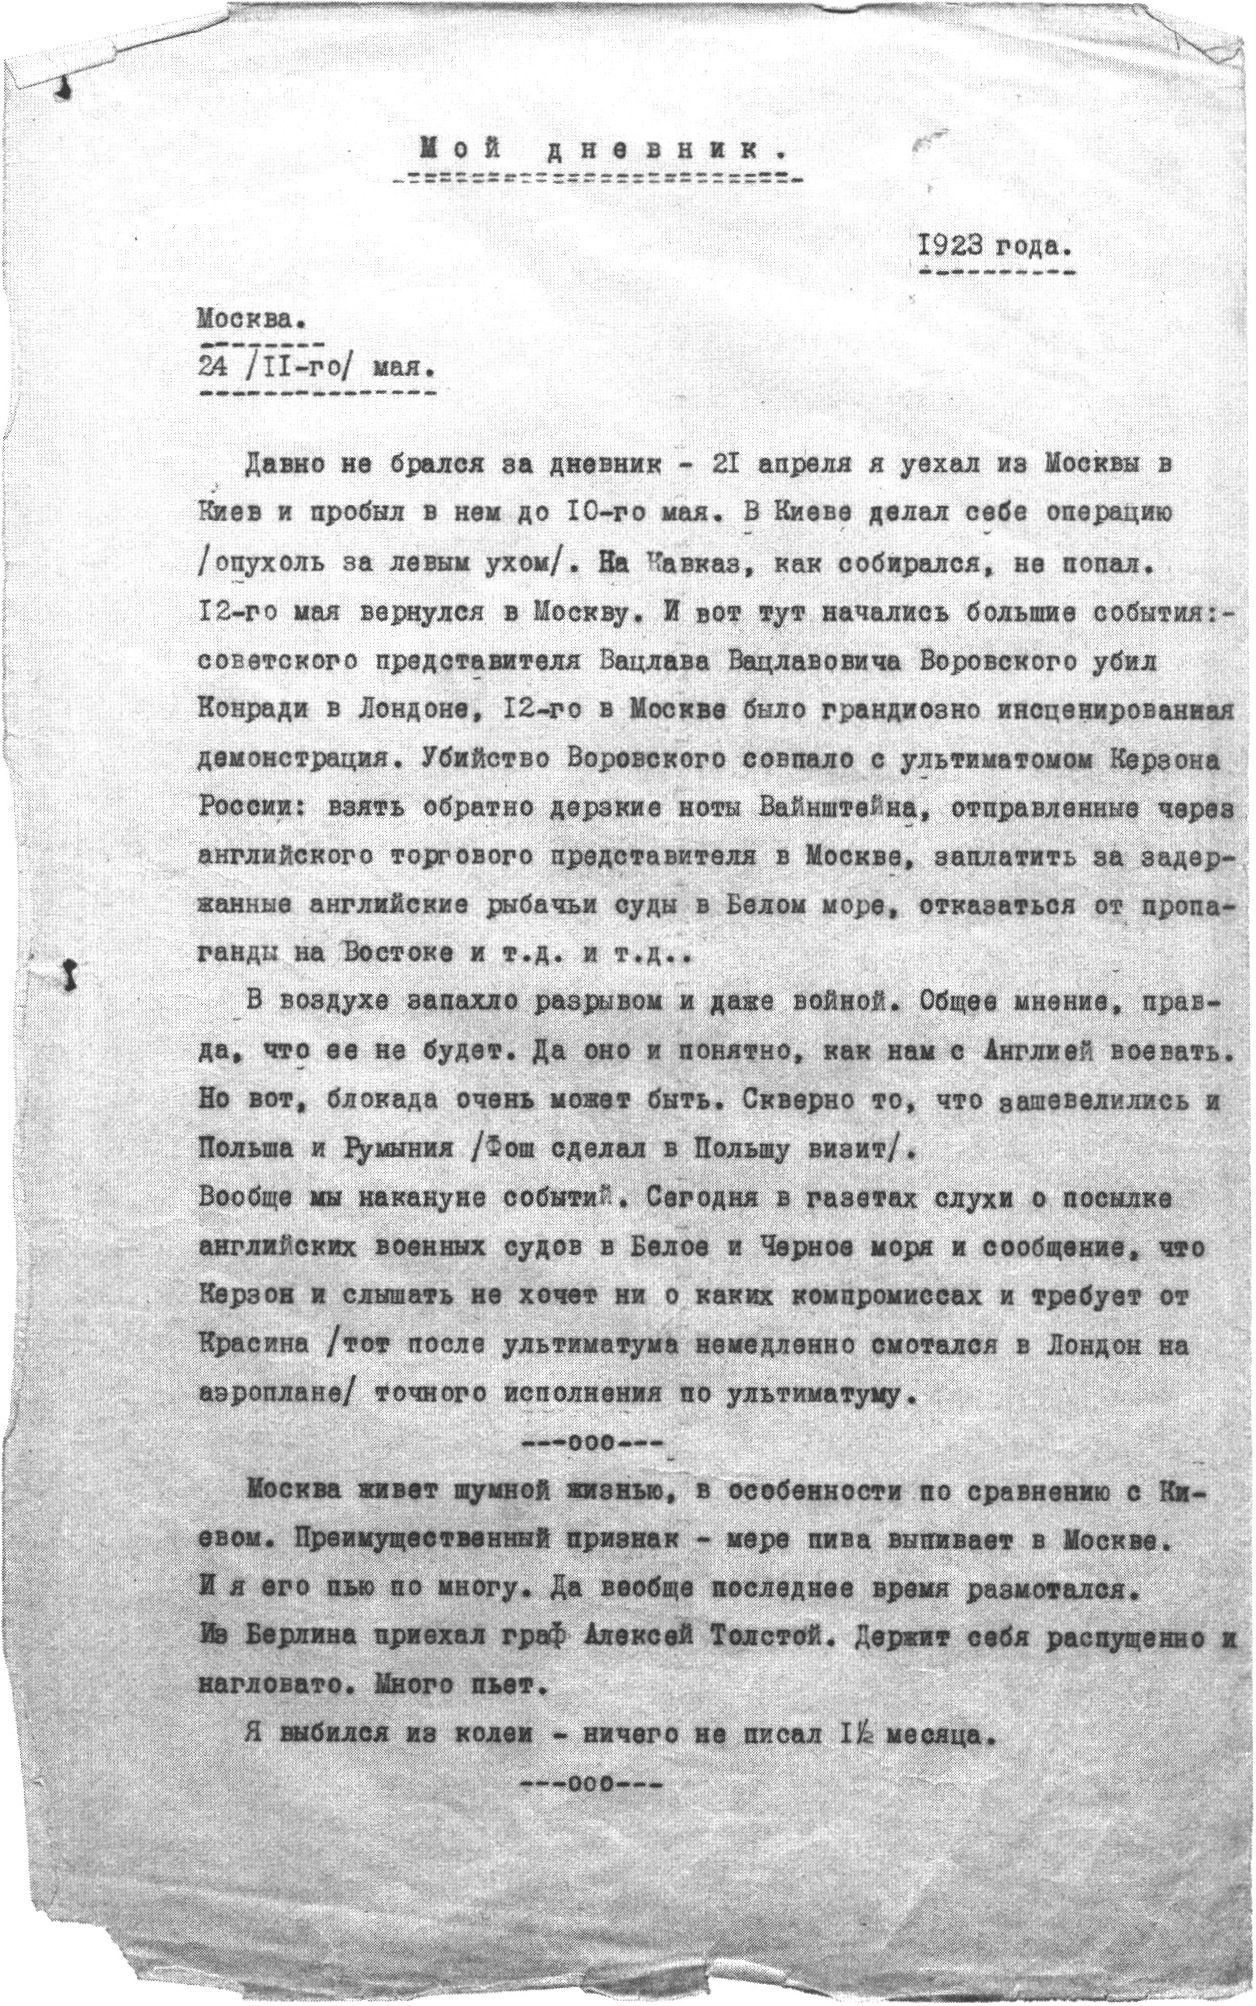 Машинописная копия дневника М.А. Булгакова «Под пятой» (24 мая 1923 г. — 13 декабря 1925 г.). Первая страница текста